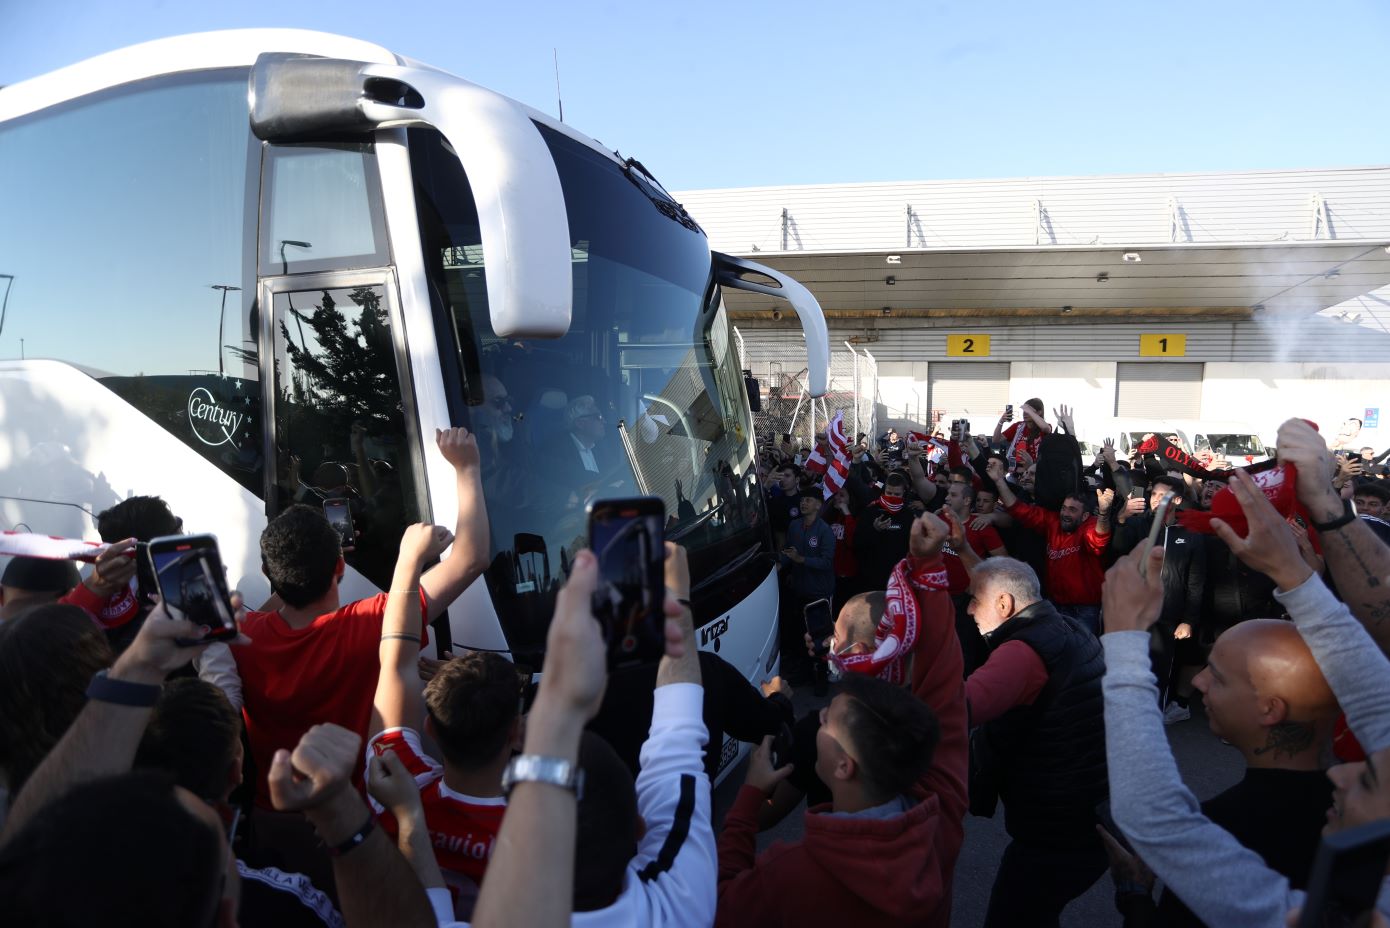 Μετά τον θρίαμβο η αποθέωση &#8211; Οι οπαδοί υποδέχτηκαν την αποστολή του Ολυμπιακού στο αεροδρόμιο